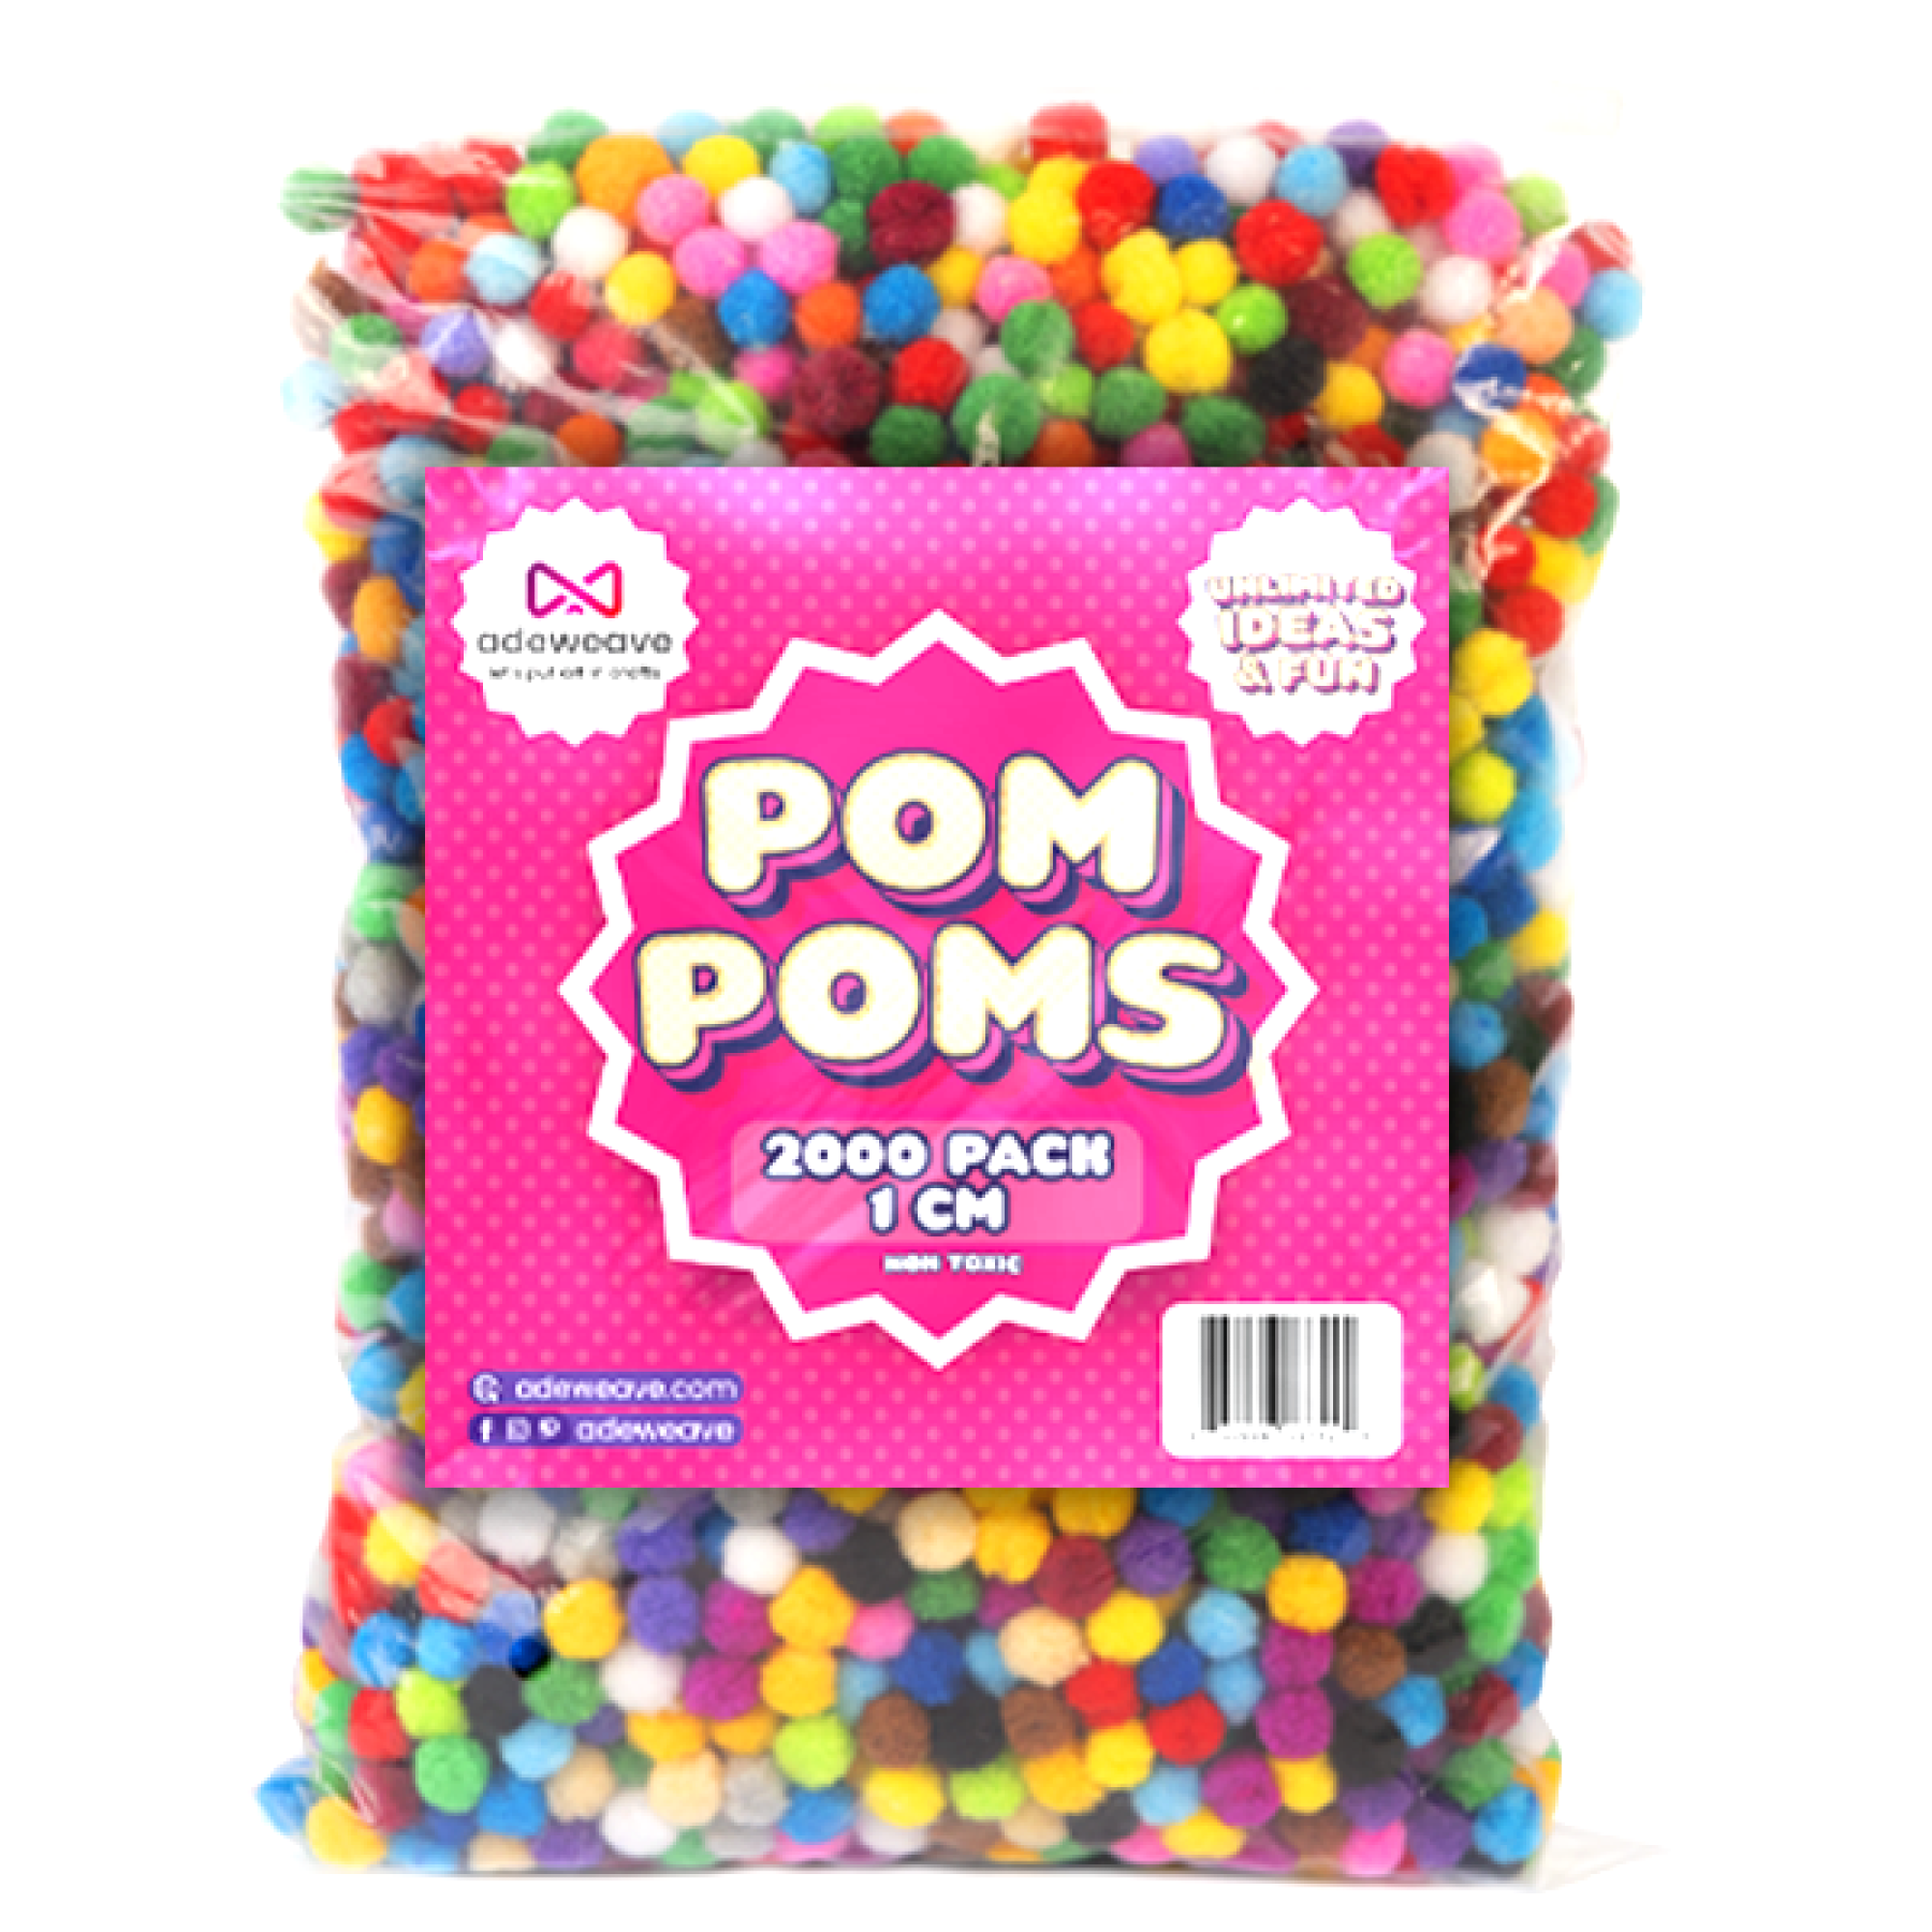 Adeweave 1500 1CM Pom Poms - Multicolor Pompoms for Crafts in